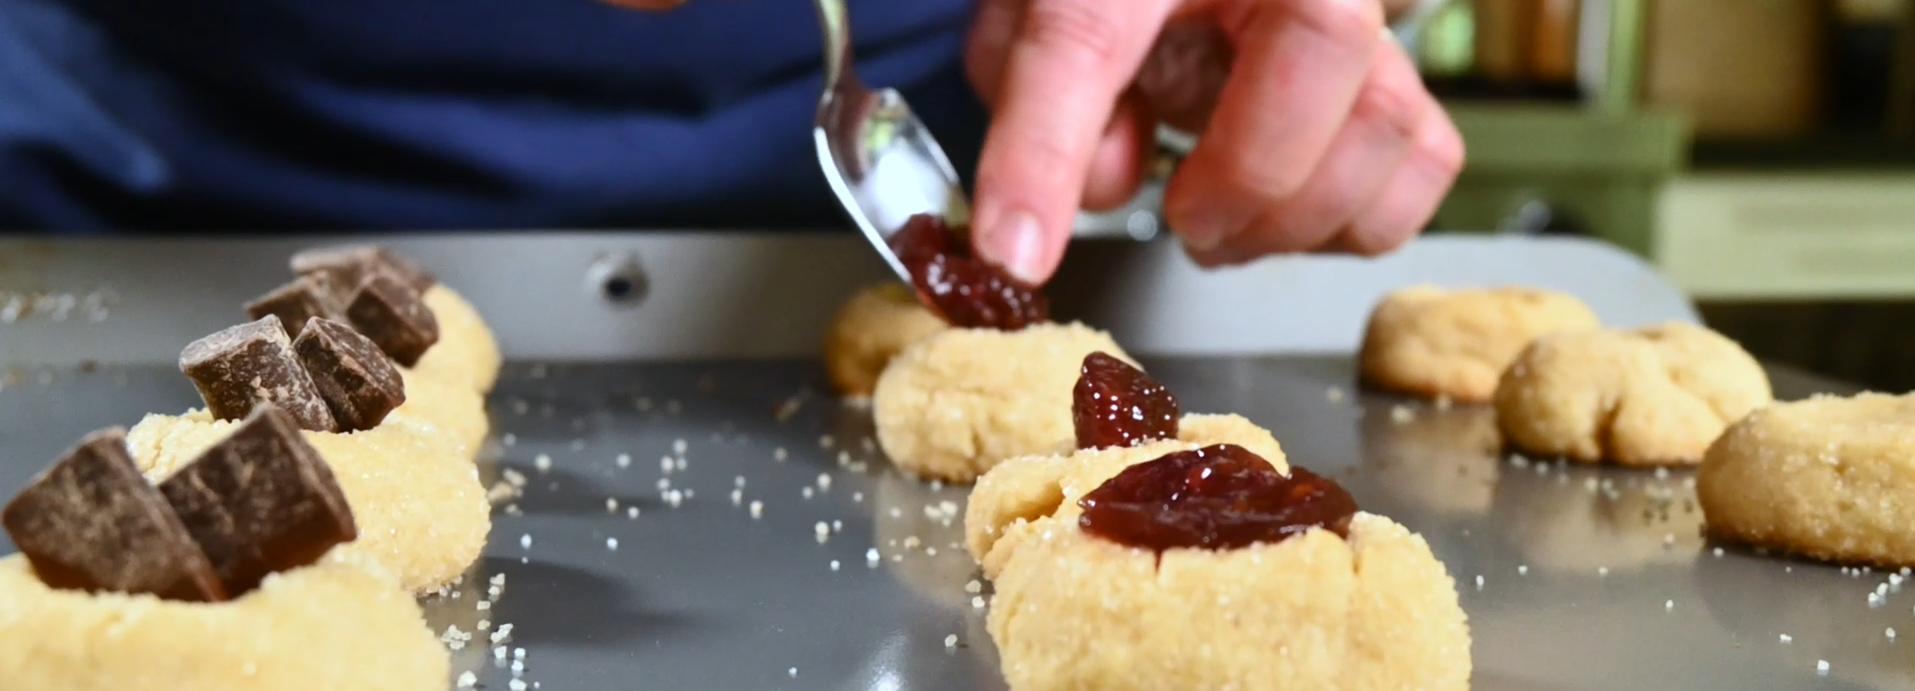 baker-tops-jam-thumbprint-cookies-with-jam